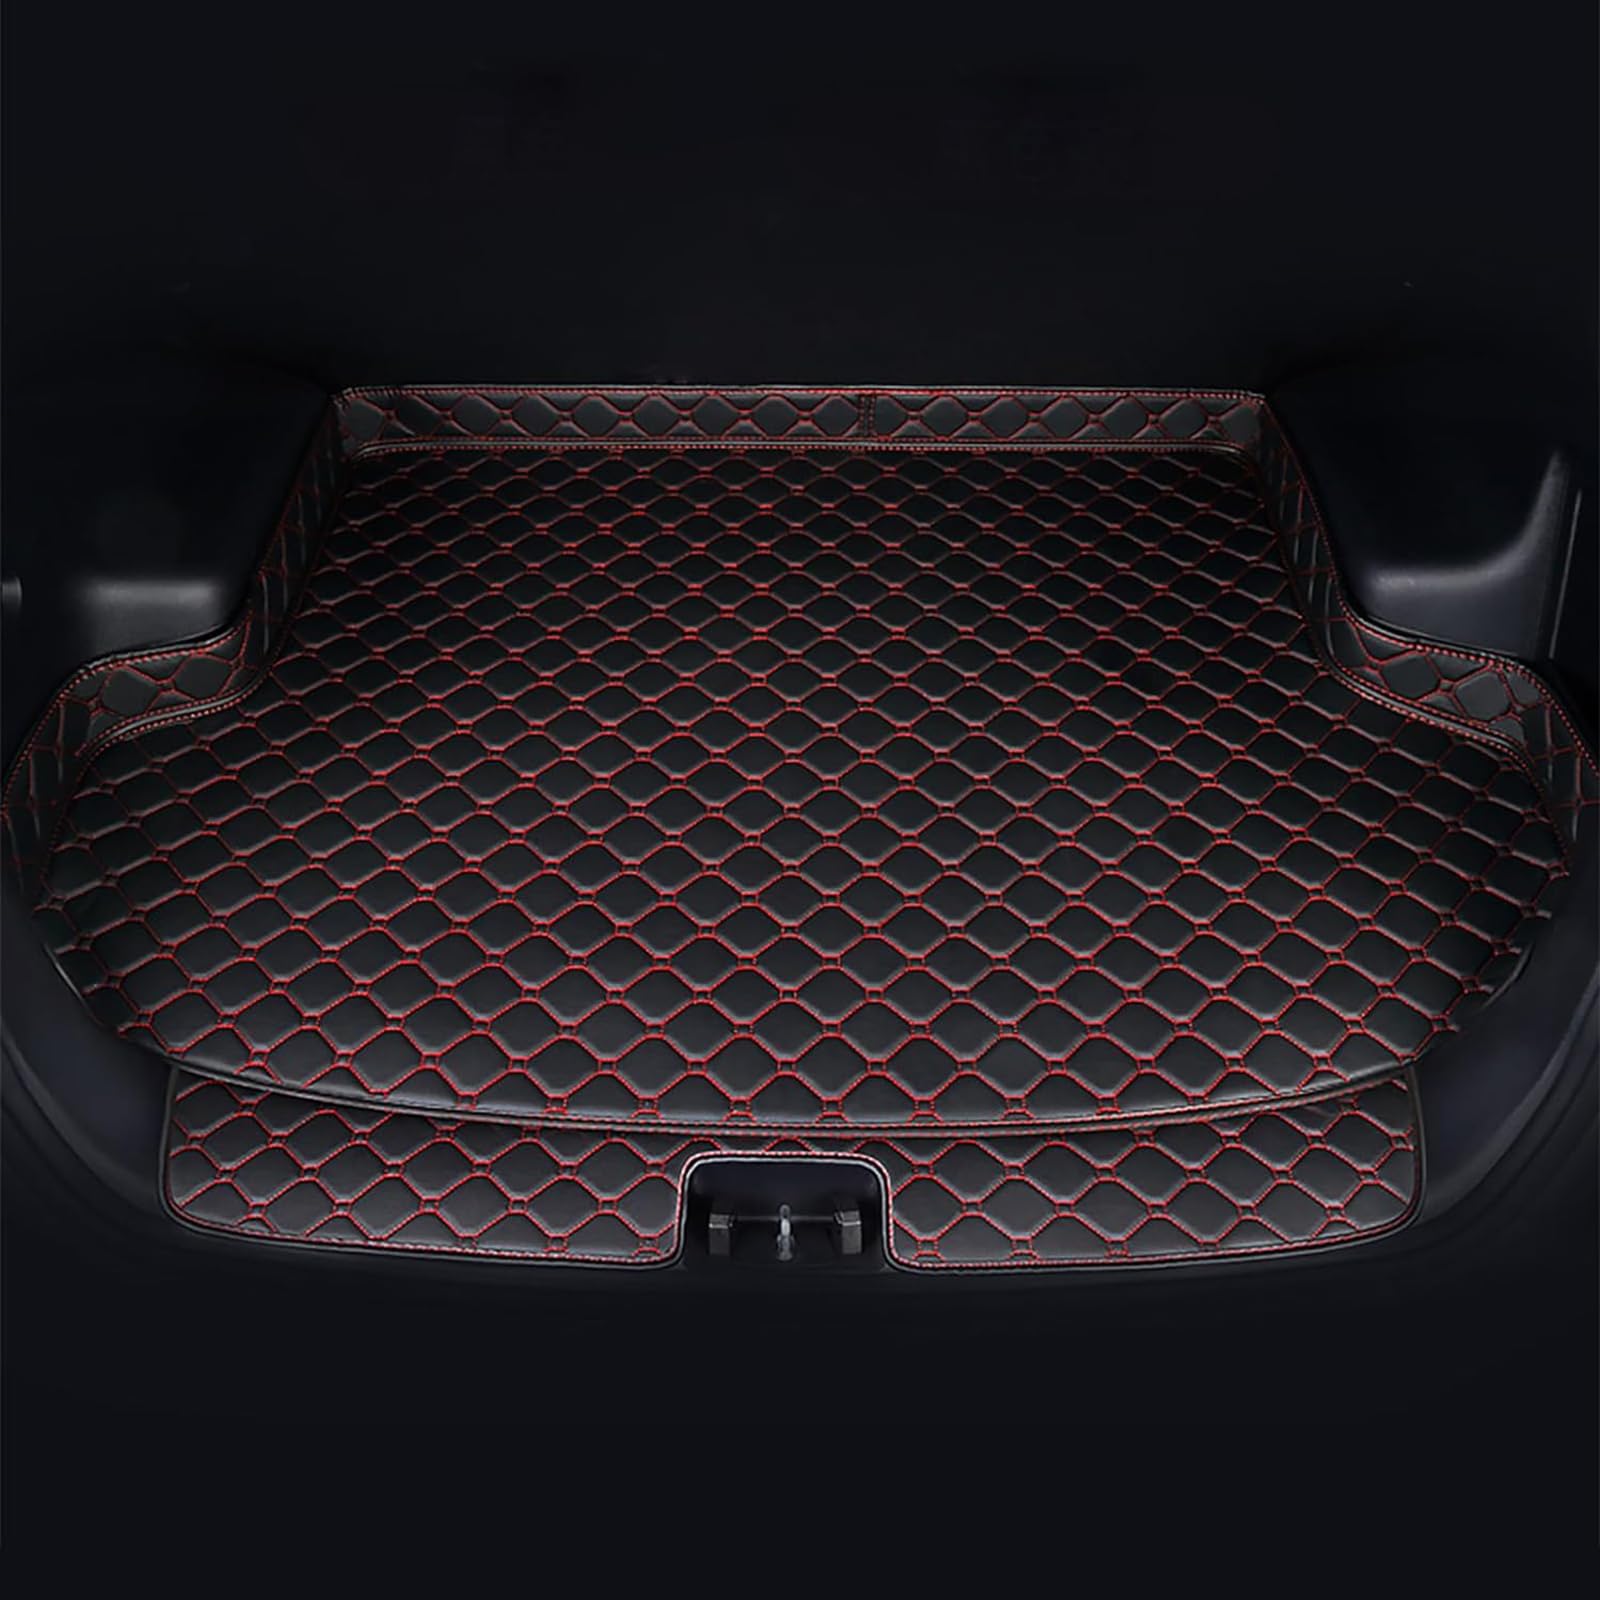 Auto Leder Kofferraummatten Für Mazda CX-7 2006-2012, Wasserdicht rutschfest Kofferraumwanne Allwetter Cargo Teppich Schutzmatte Interieur Zubehör,C/Black-Red von FNUQKREF